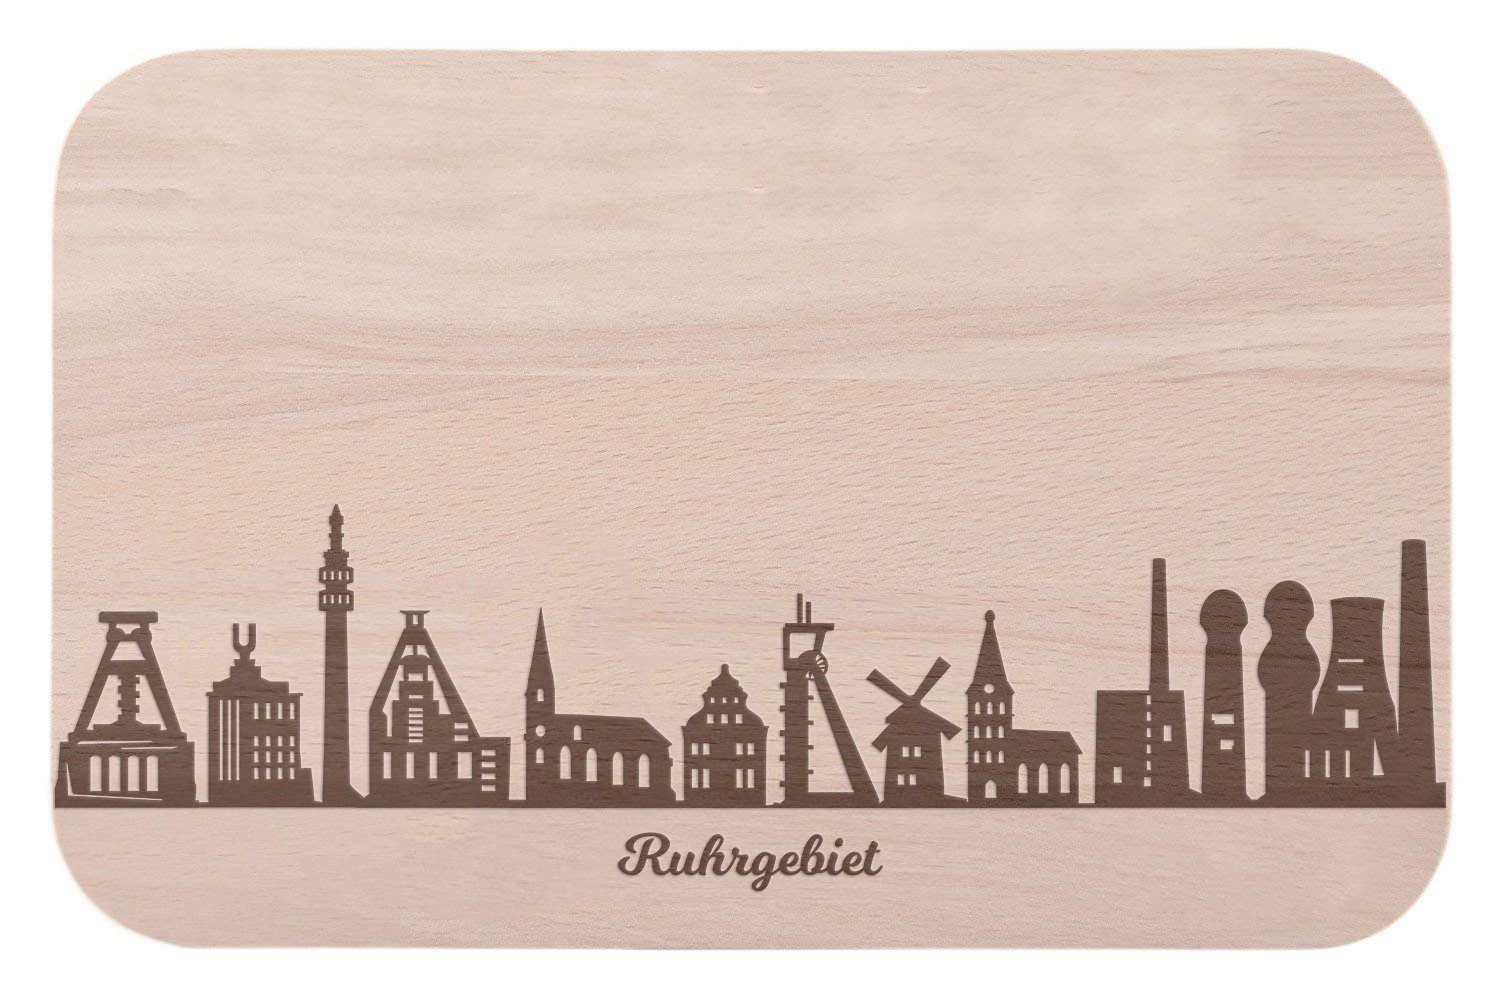 GRAVURZEILE Schneidebrett Frühstücksbrettchen Ruhrgebiet mit Skyline Gravur - Brotzeitbrett & Geschenk für Ruhrgebiet Stadtverliebte & Fans - ideal auch als Souvenir, Holz, (Kein Set)